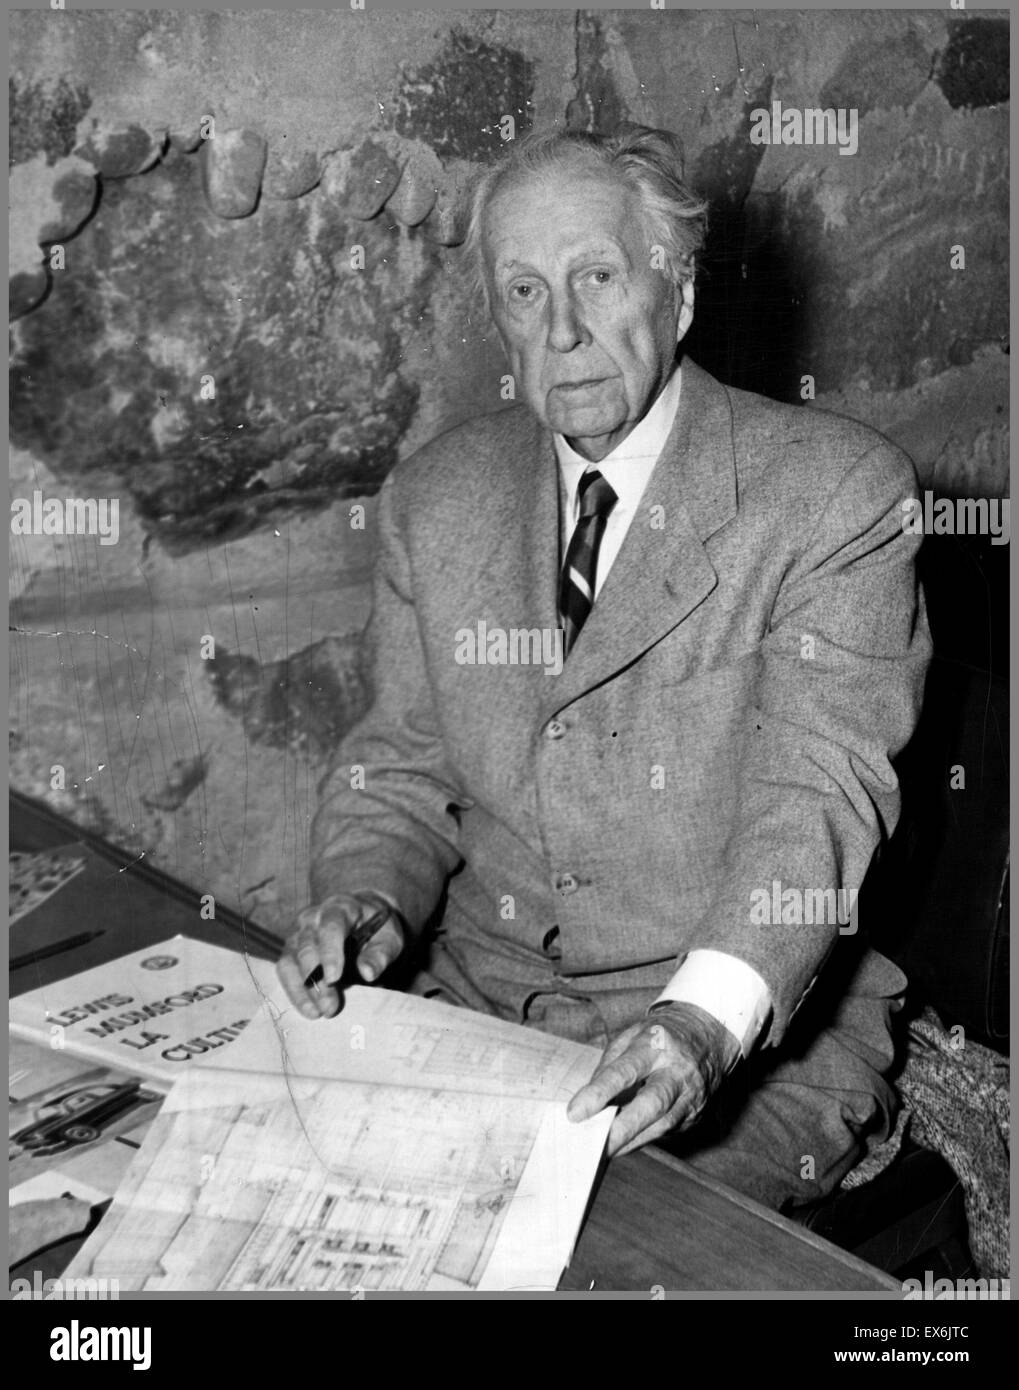 Frank Lloyd Wright (nacido Frank Lincoln Wright, 8 de junio de 1867 - 9 de abril de 1959) fue un arquitecto americano Foto de stock